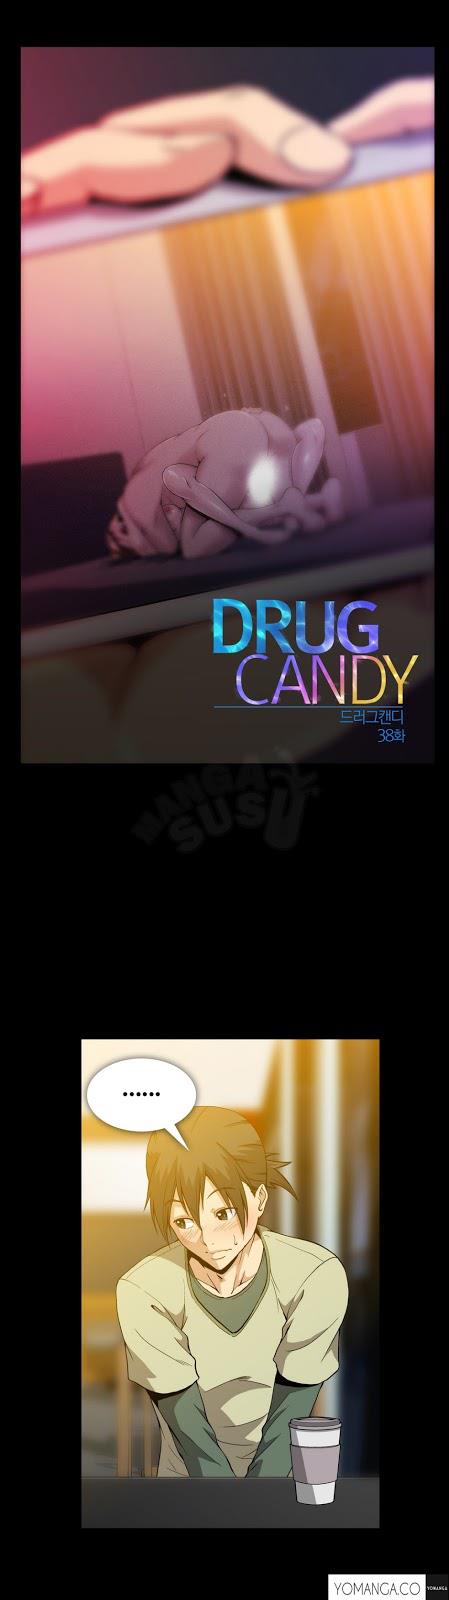 Дурманящие конфеты (Drug Candy) | Манга онлайн на русском языке | Desu.Me